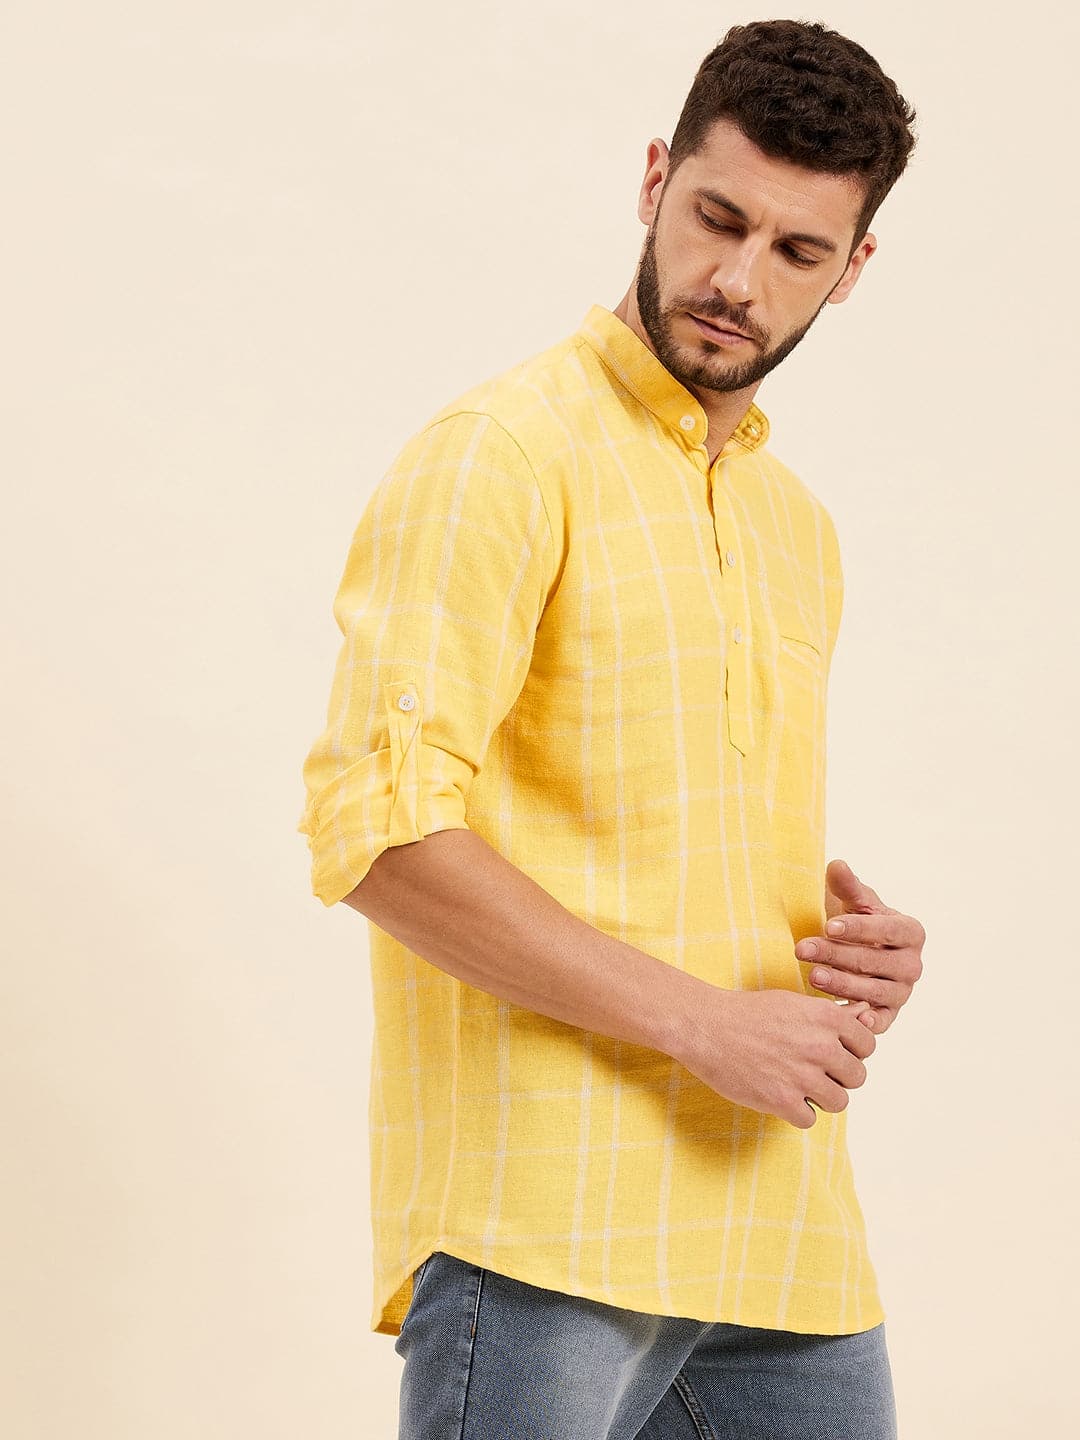 Men's Yellow & White Check Roll-Up Sleeves Kurta Shirt - LYUSH-MASCLN